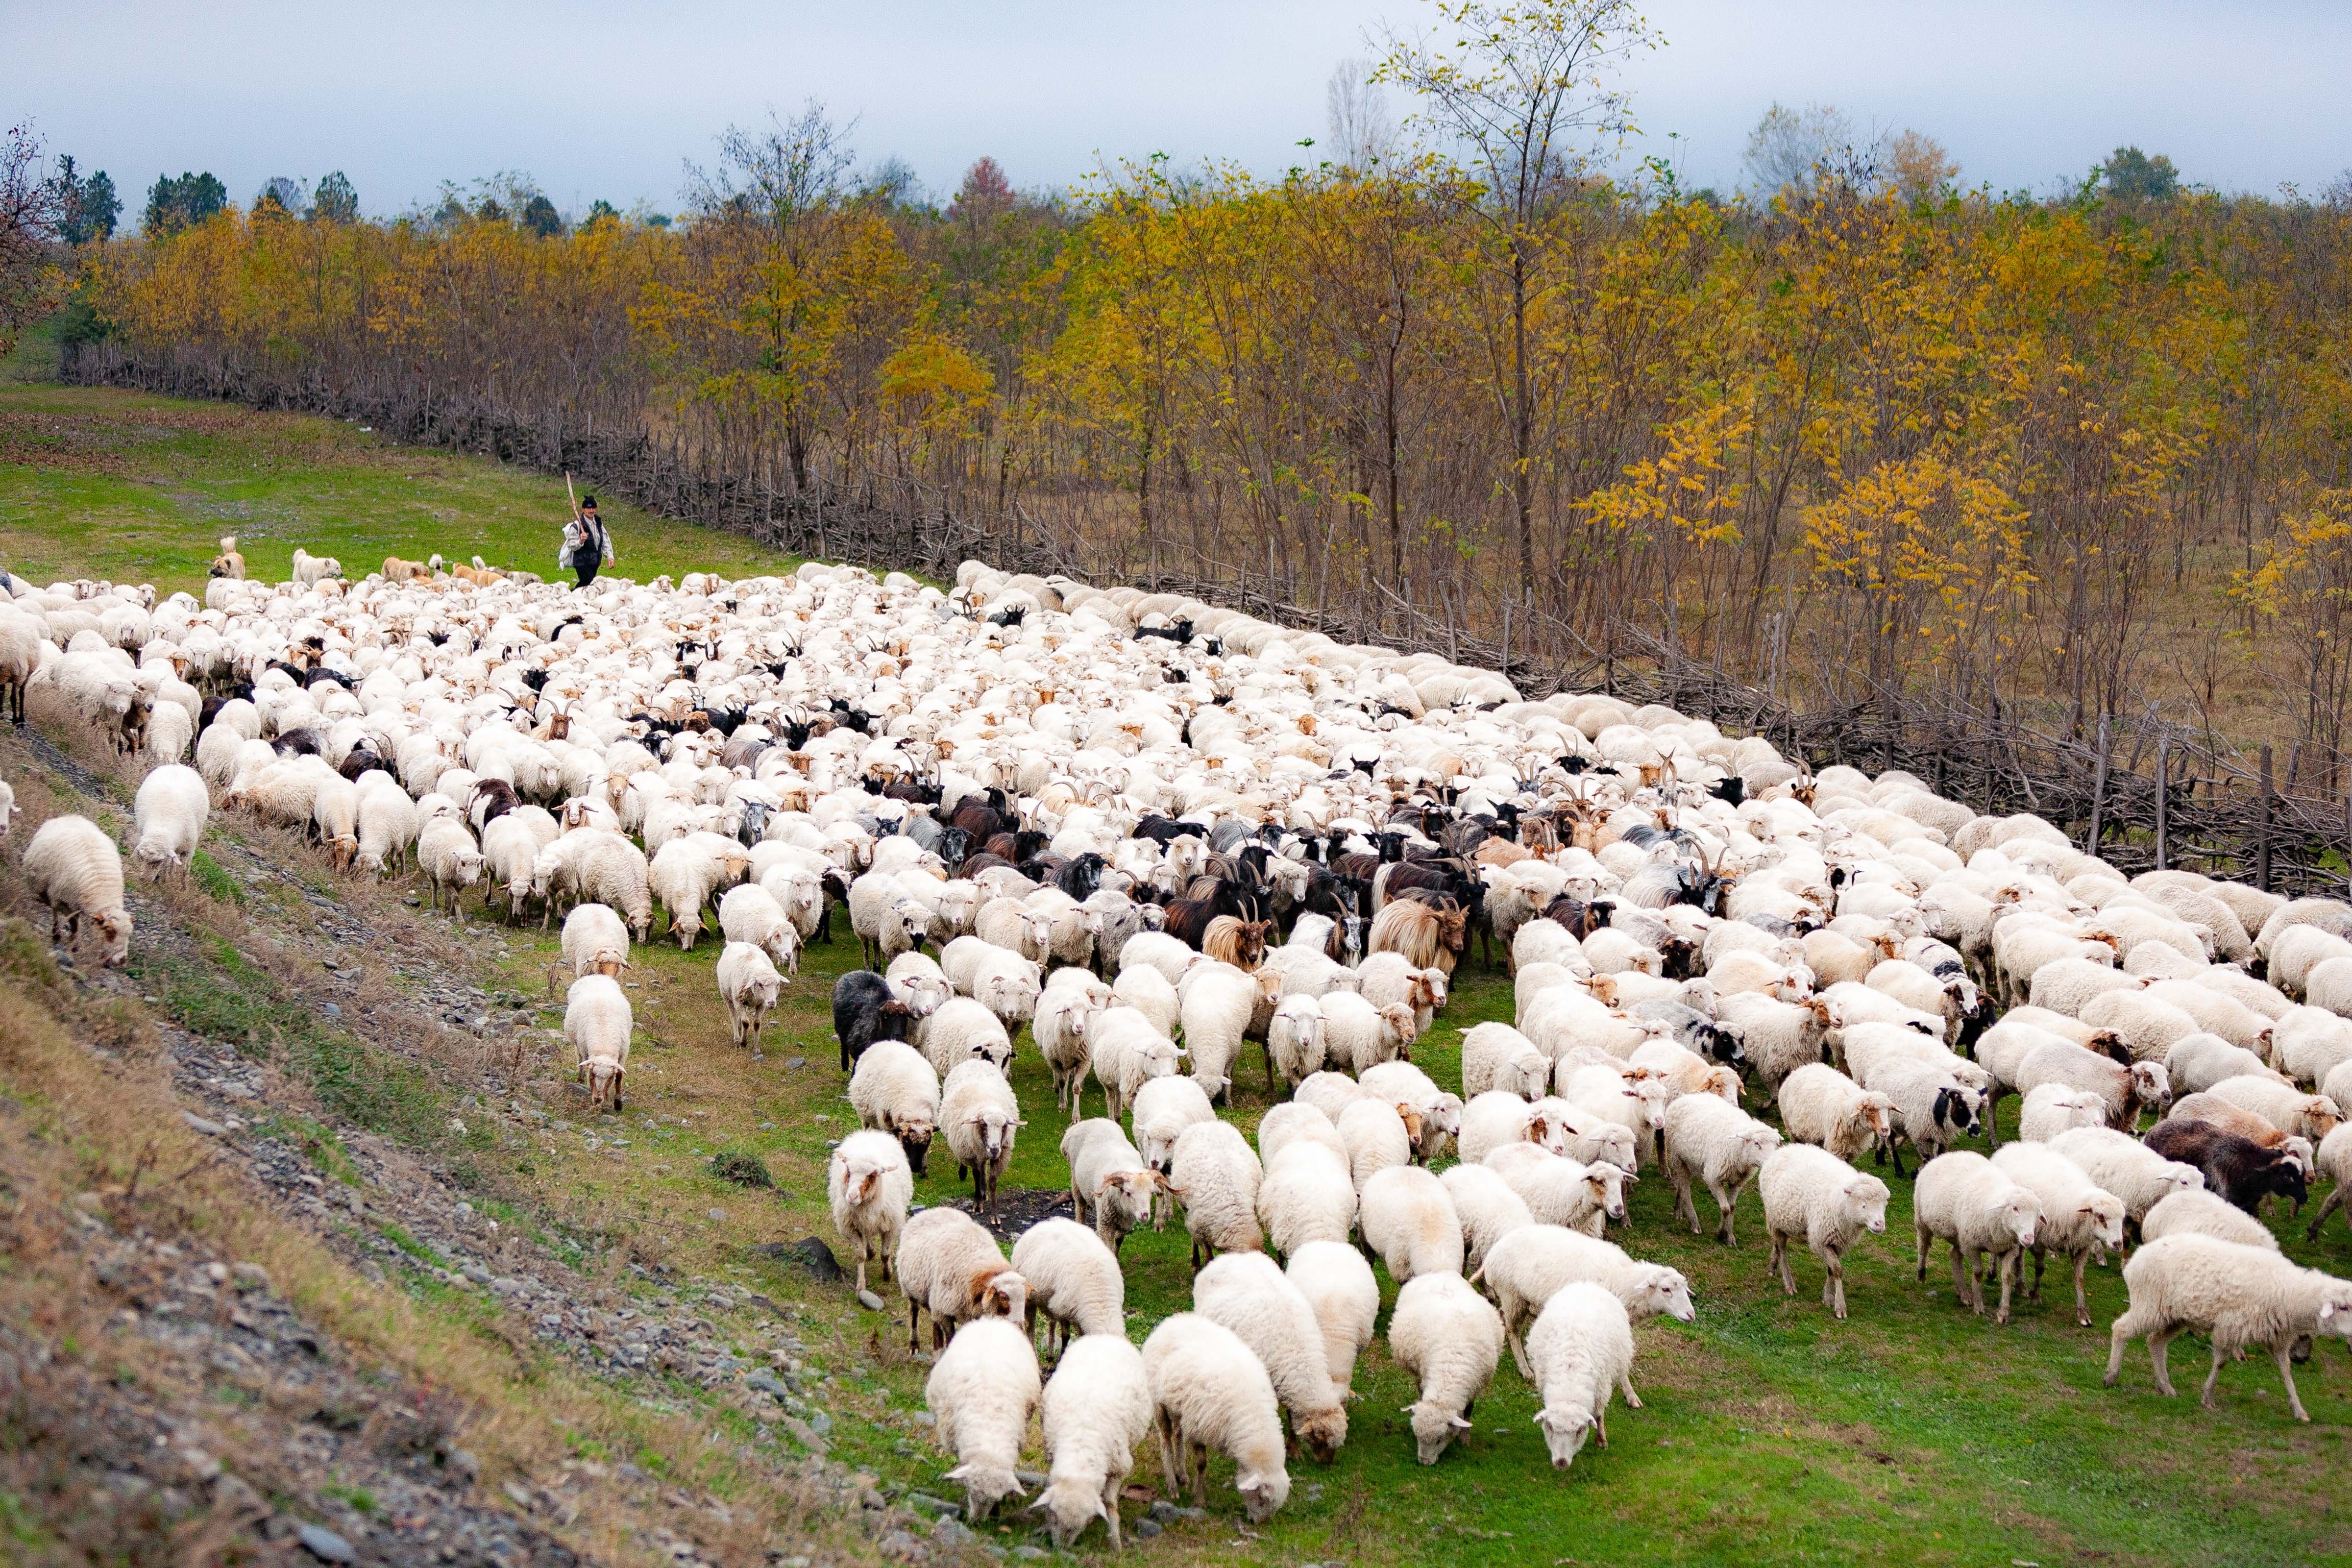 Azerbaijan, Qax Prov, Sheep, 2009, IMG 8333